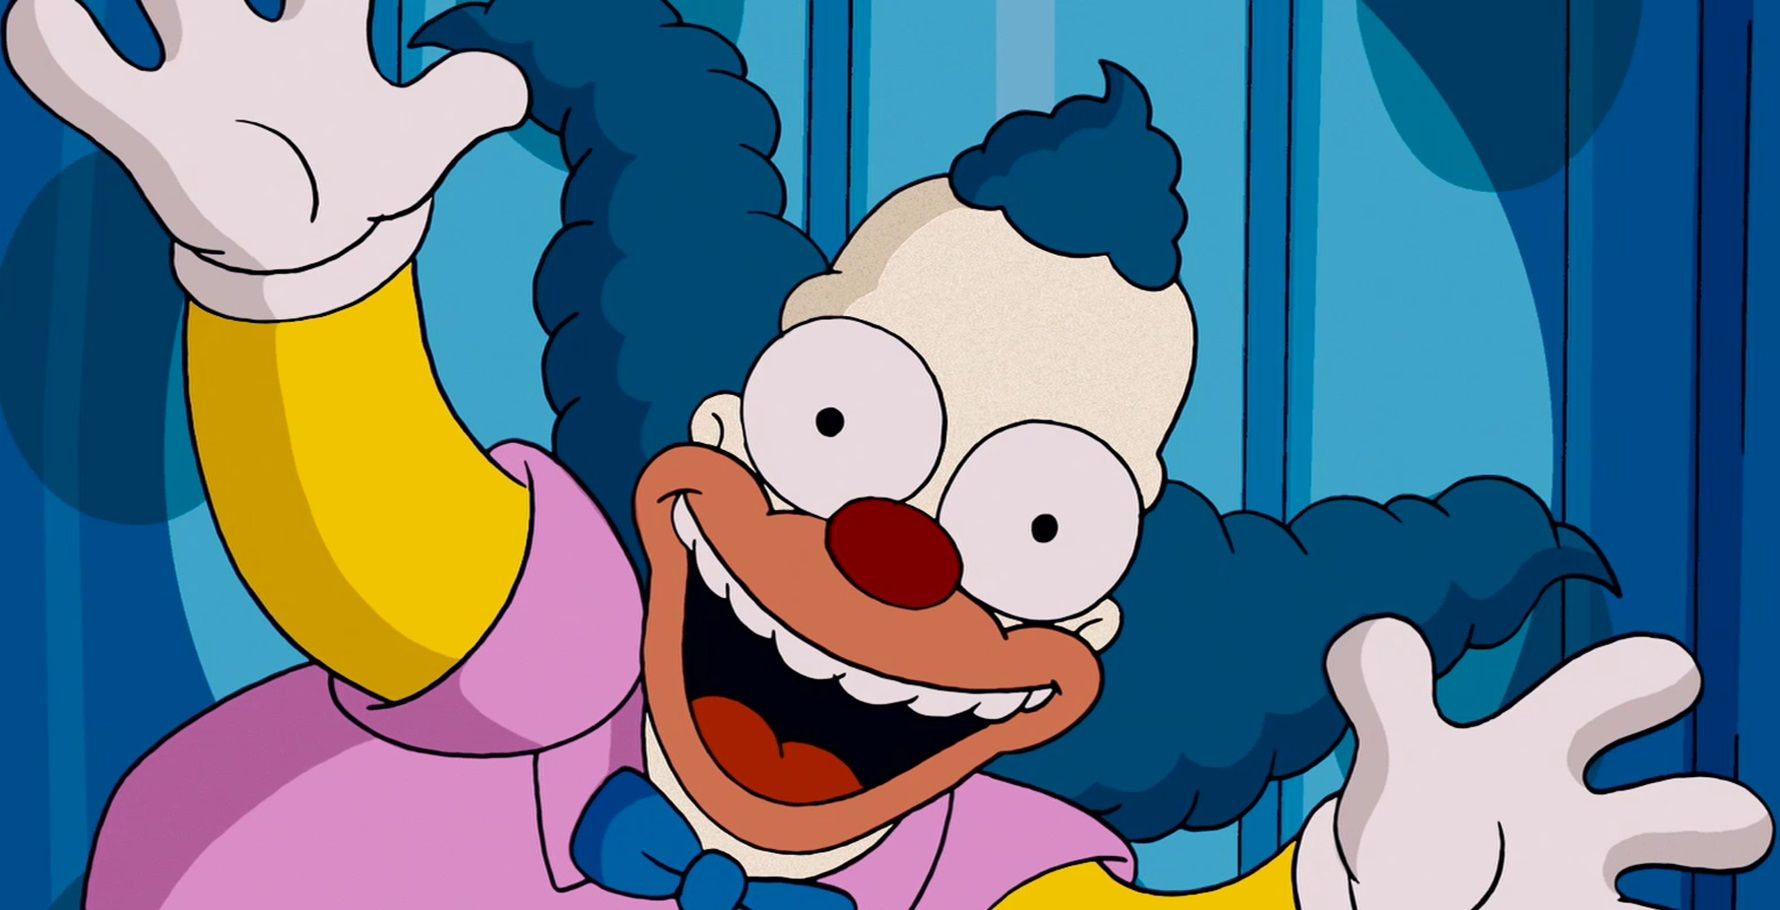 7. Krusty the Clown - wide 6